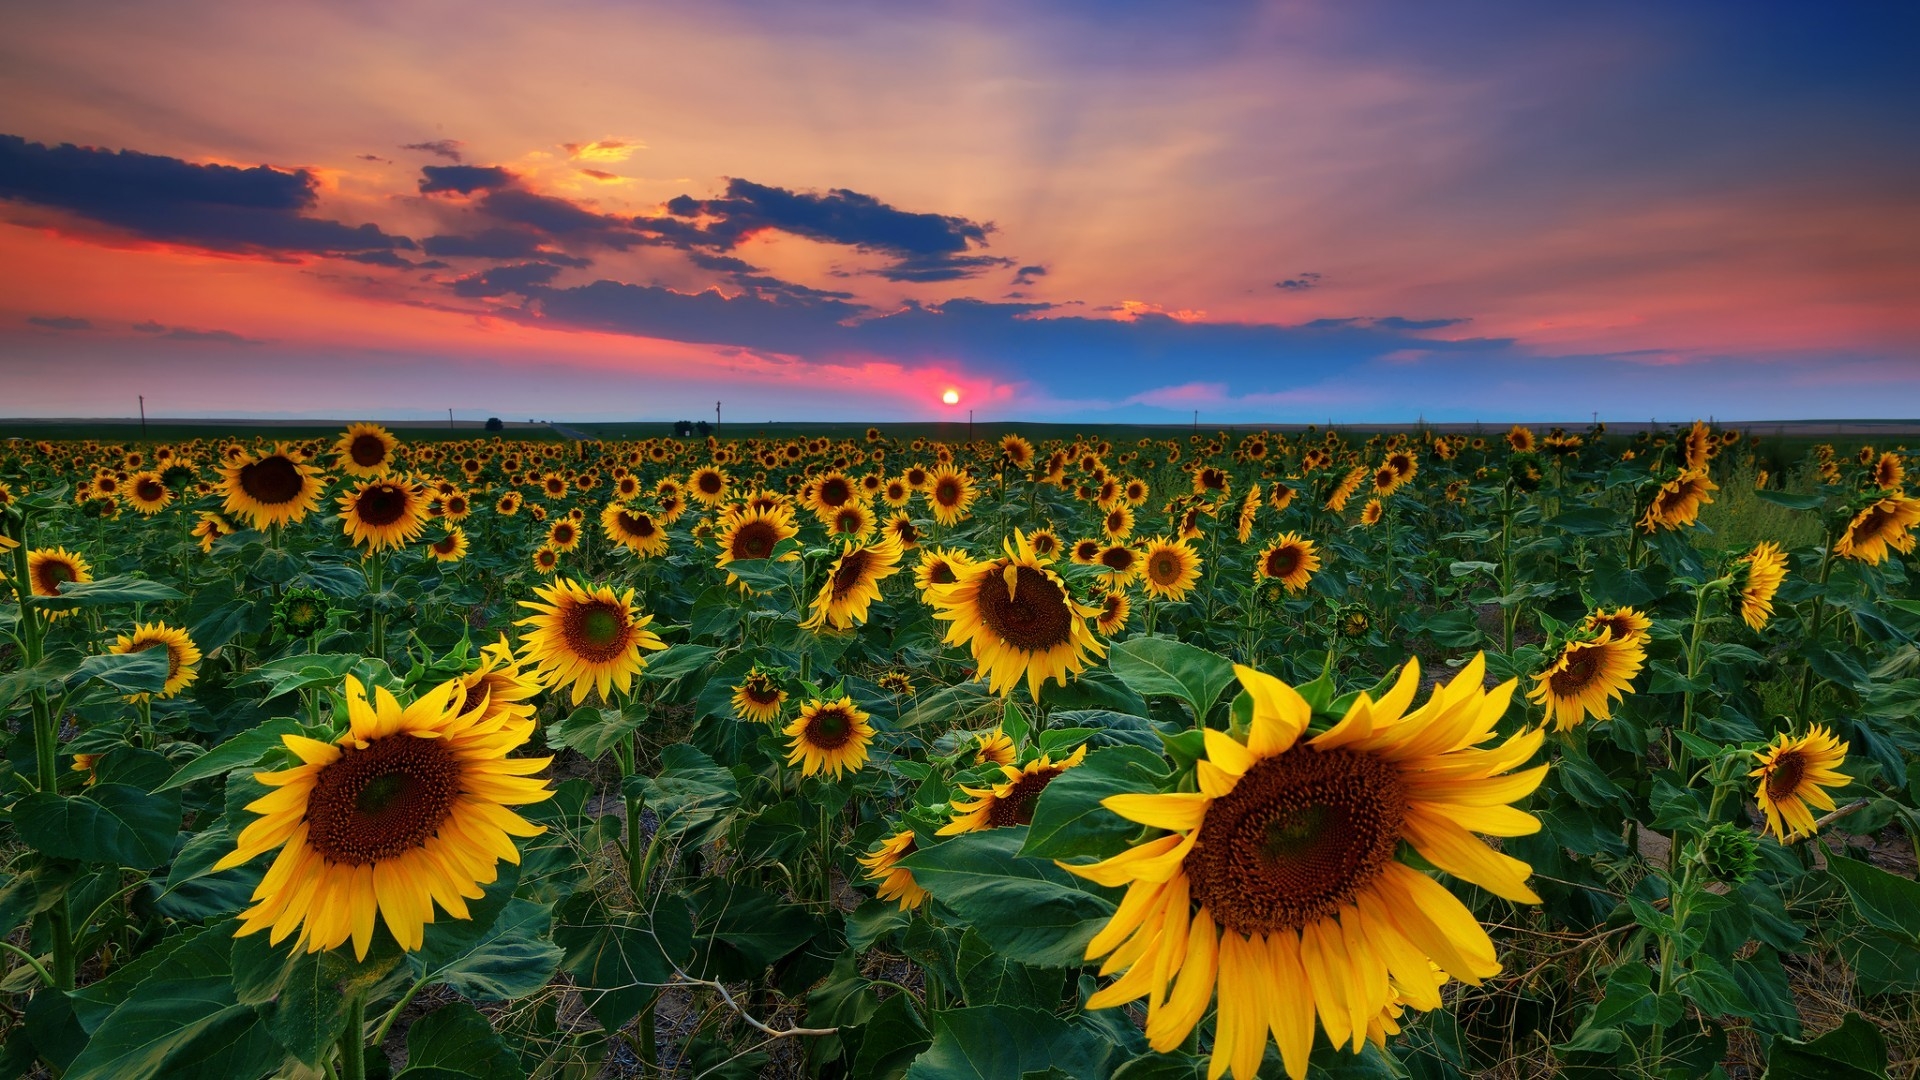 Denver Sunflowers Field for 1920 x 1080 HDTV 1080p resolution